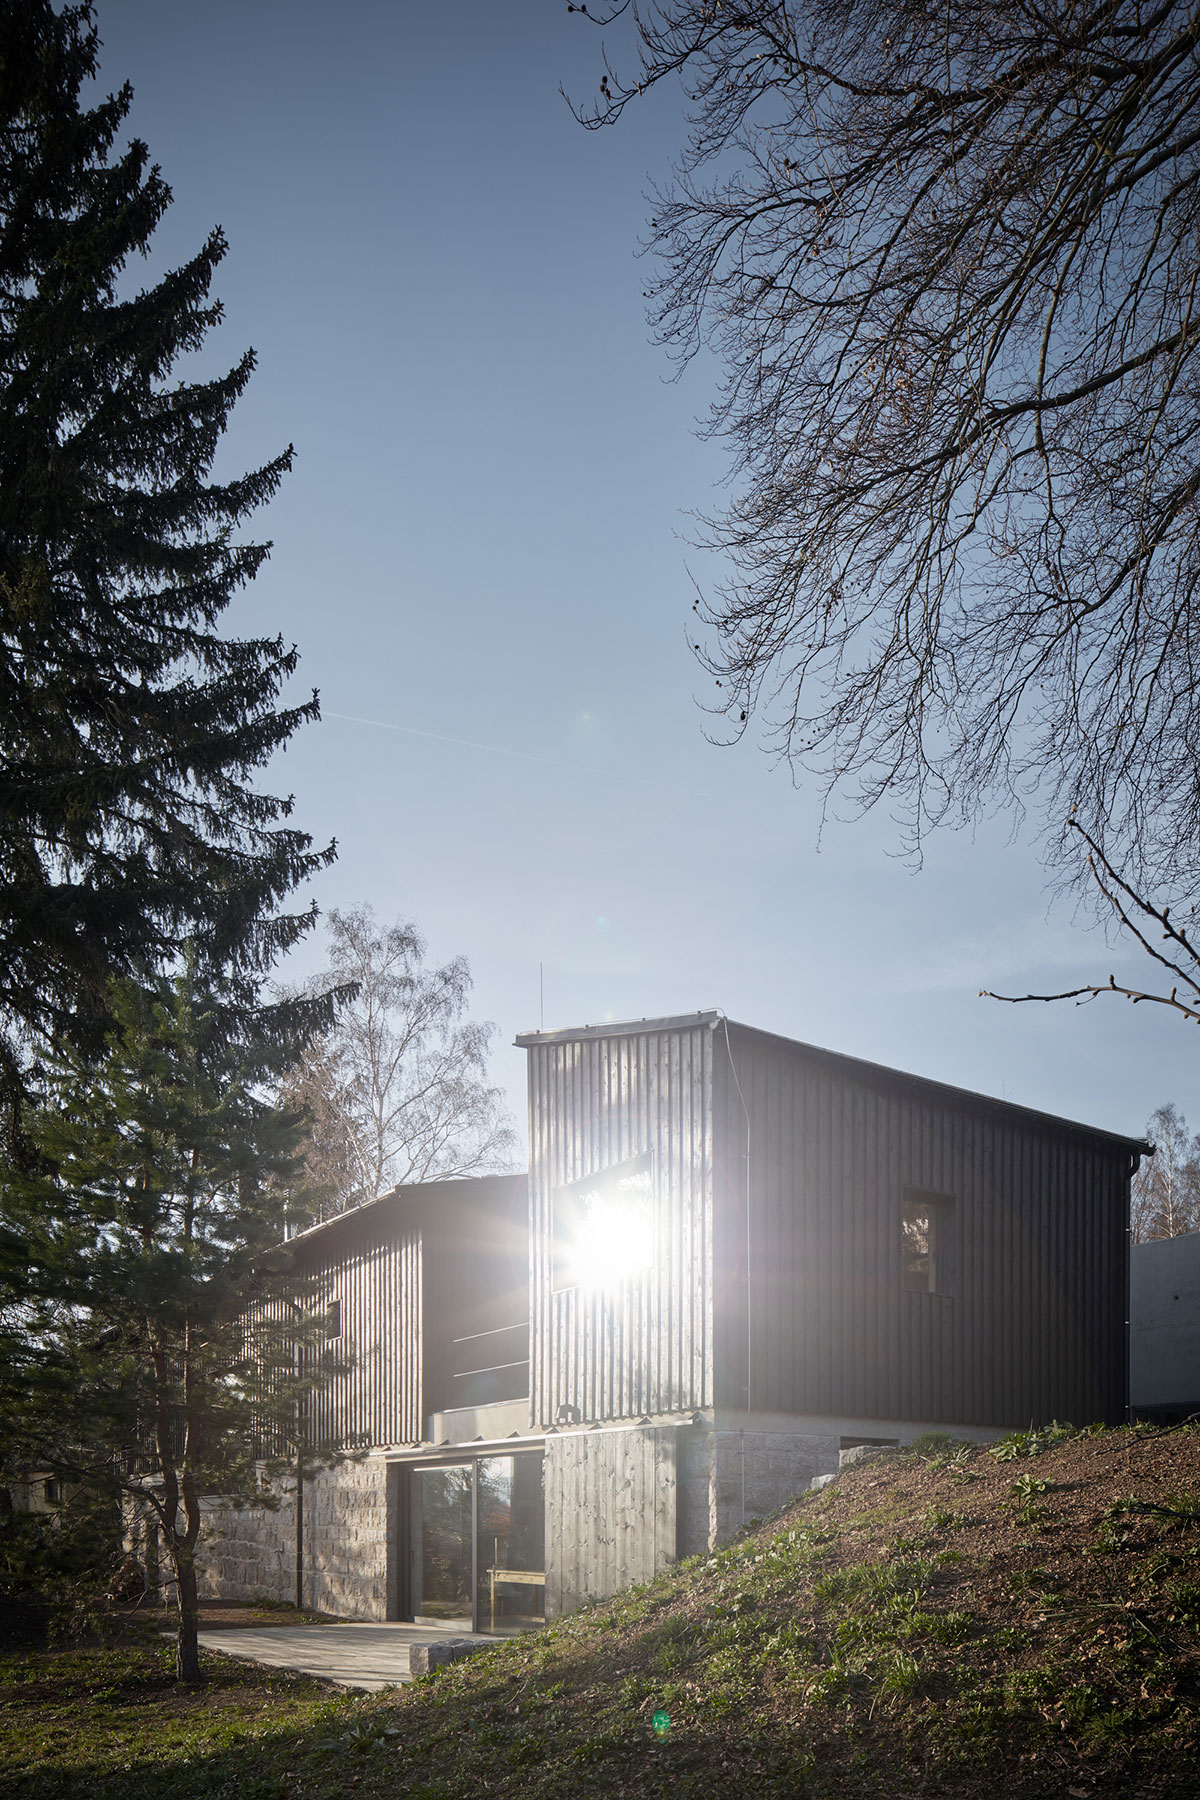 Nový dům má díky použitým materiálům a jednoduché barevnosti skandinávský nádech